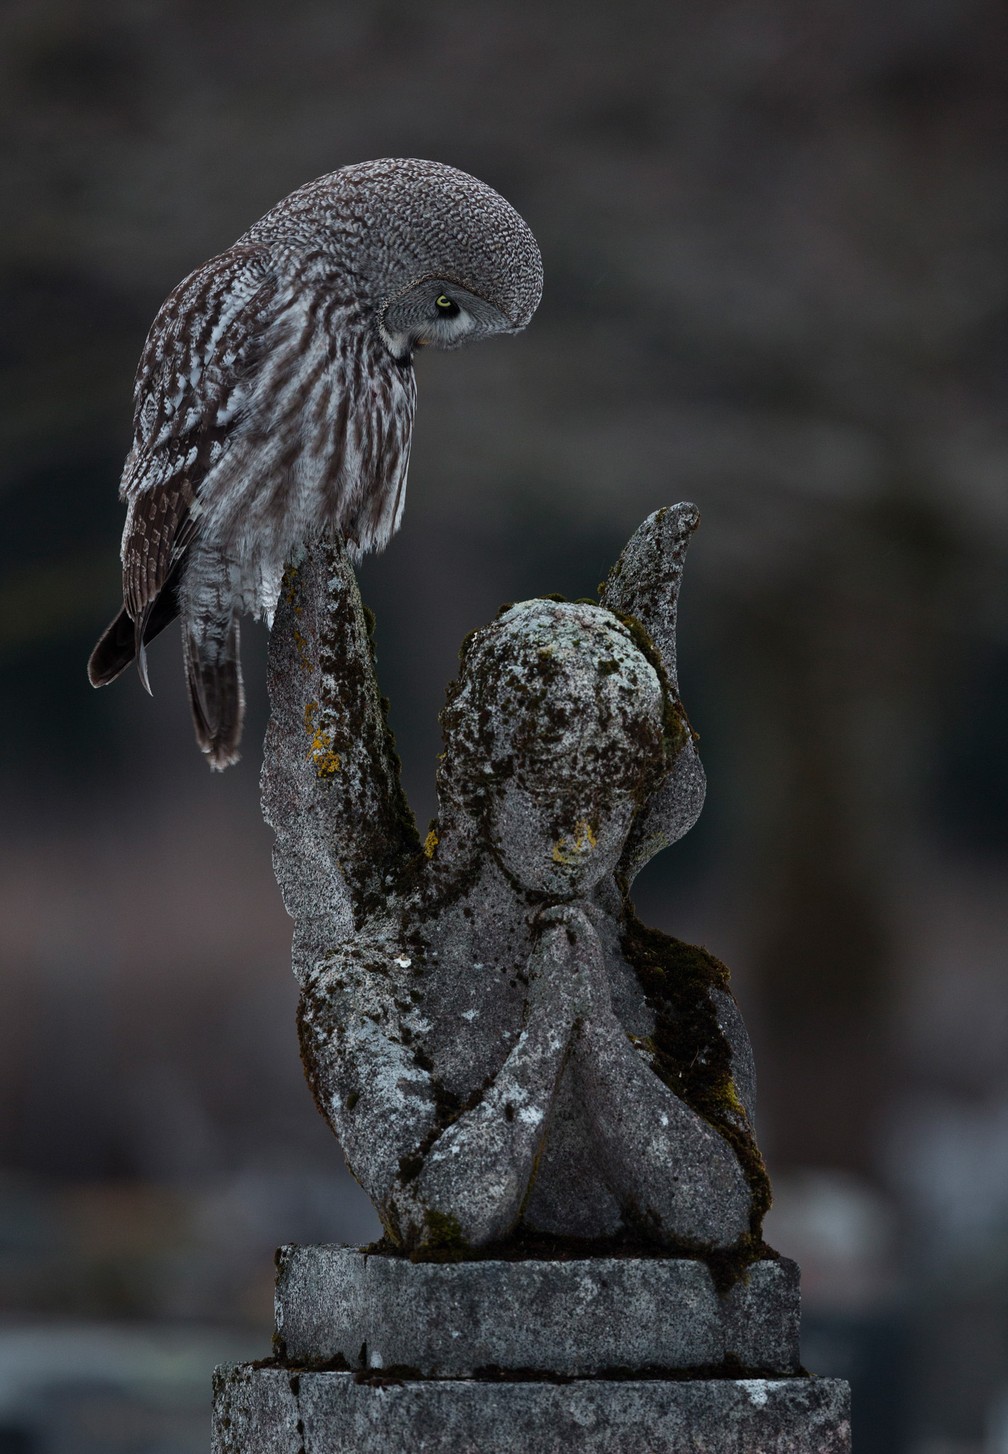 'Um momento de oração' - Foto vencedora na categoria Aves Urbanas — Foto: Arto Leppänen/Bird Photographer of the Year